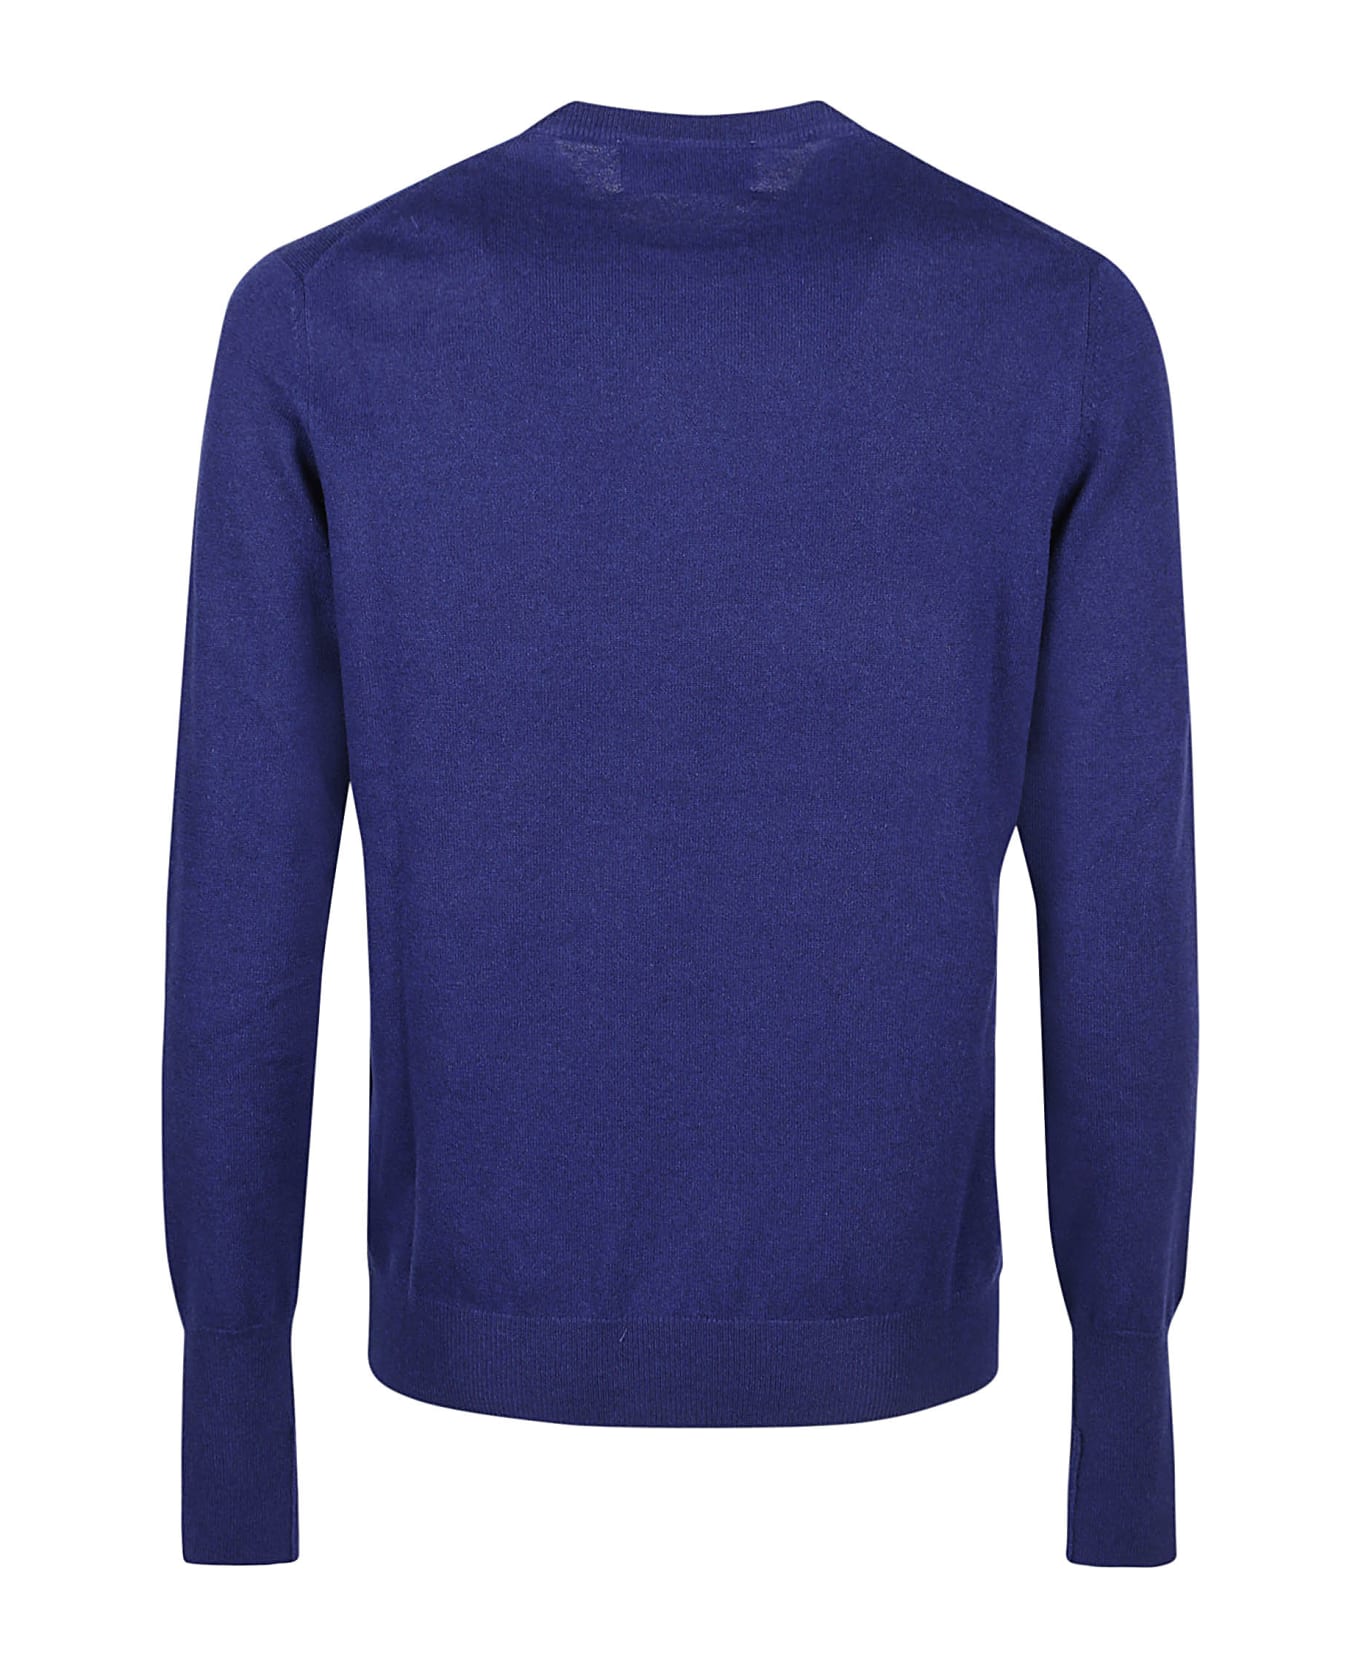 Ballantyne Plain Round Neck Sweater - Velvet ニットウェア